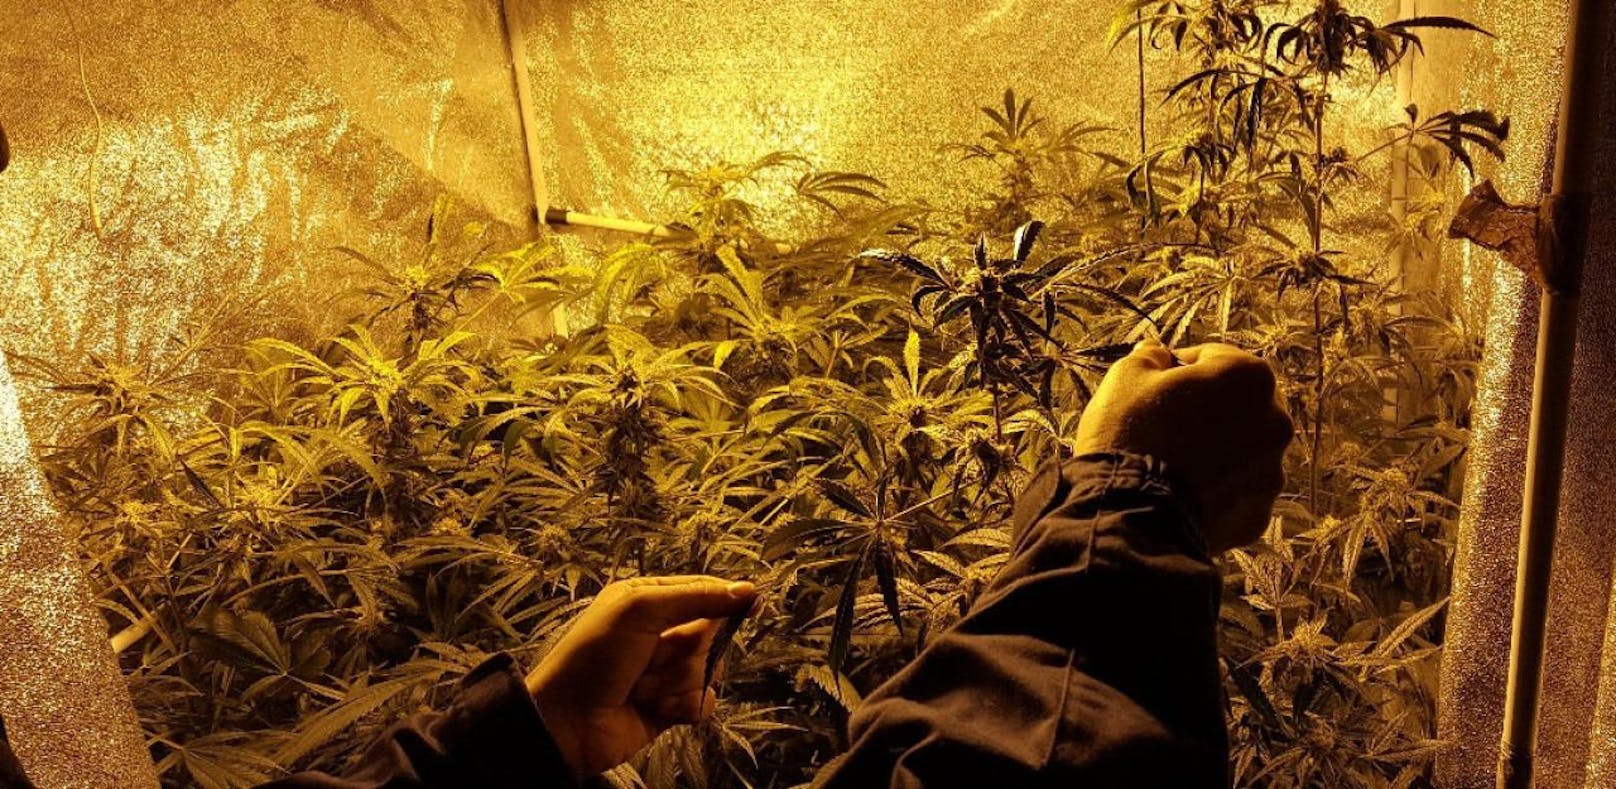 Polizisten ernten in Schlafzimmer Cannabis